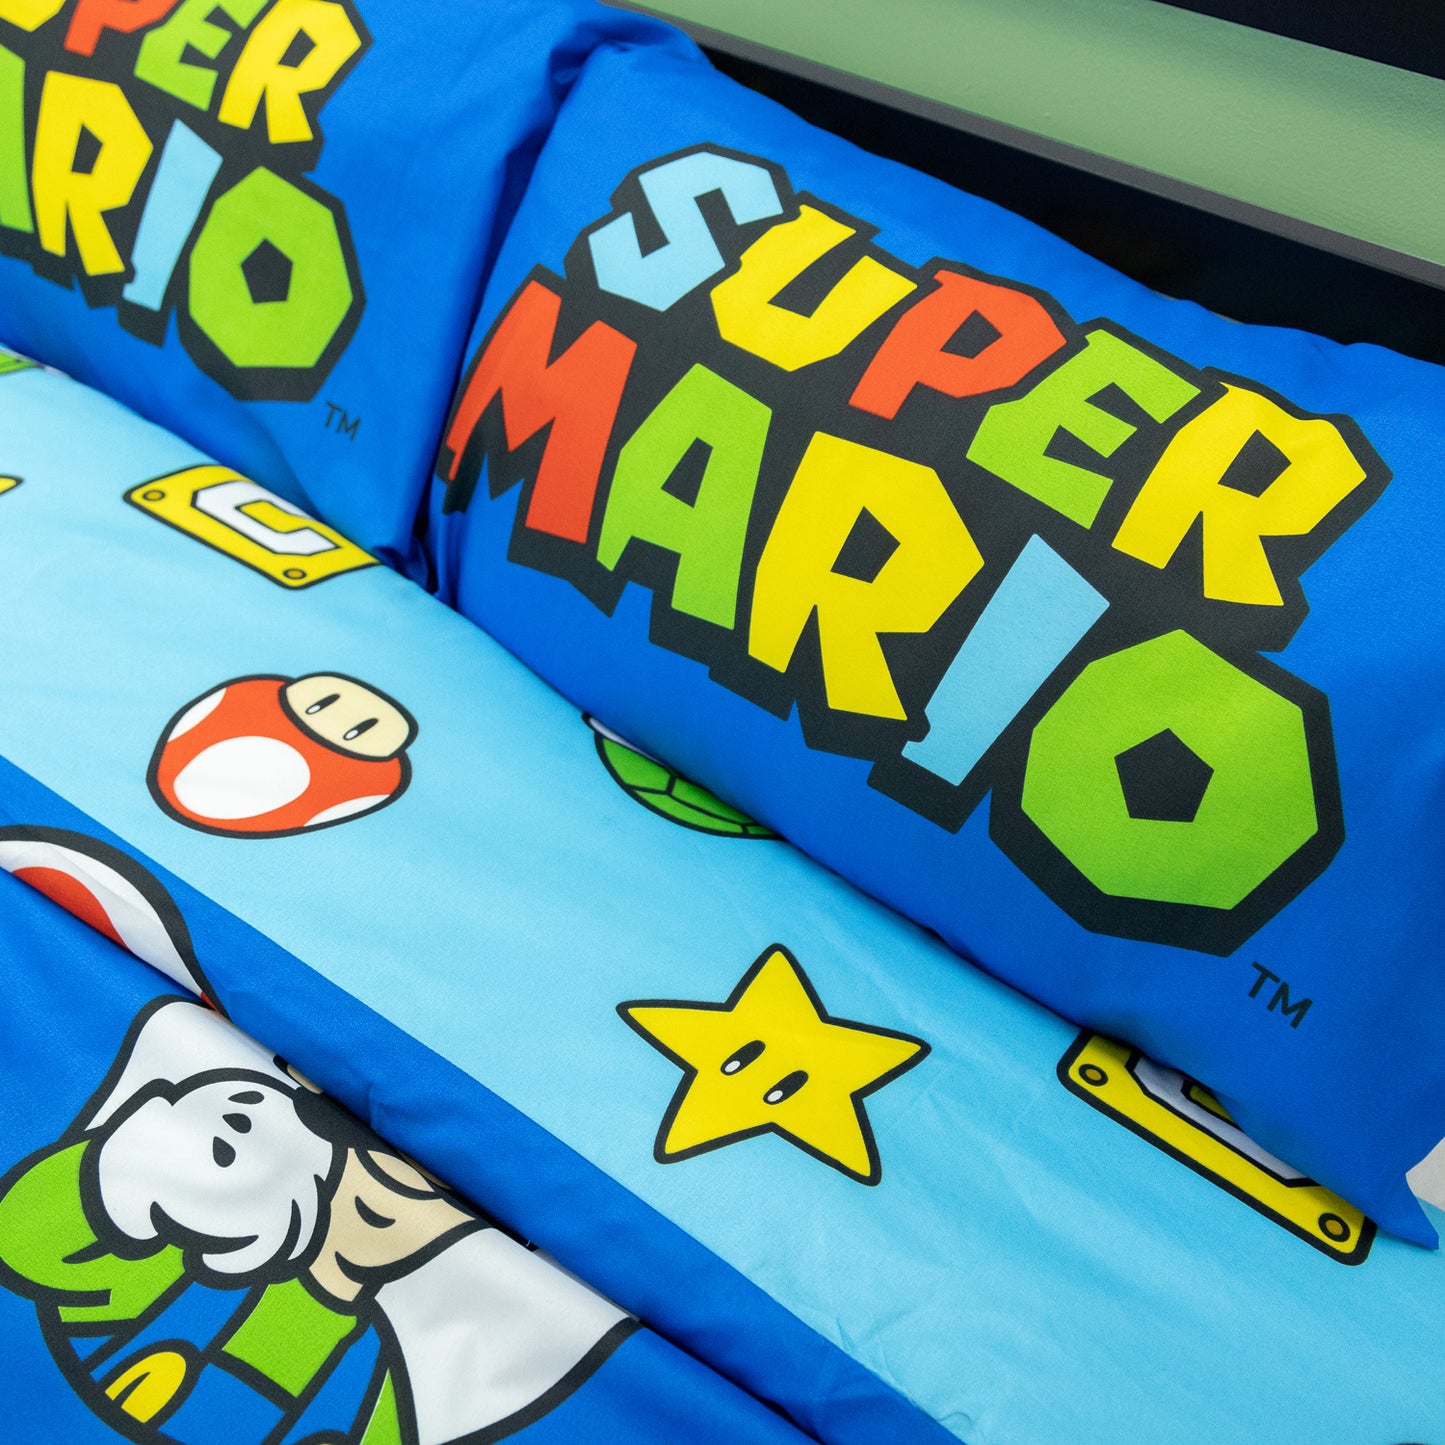 Nintendo Super Mario Continue Rotary Duvet Set